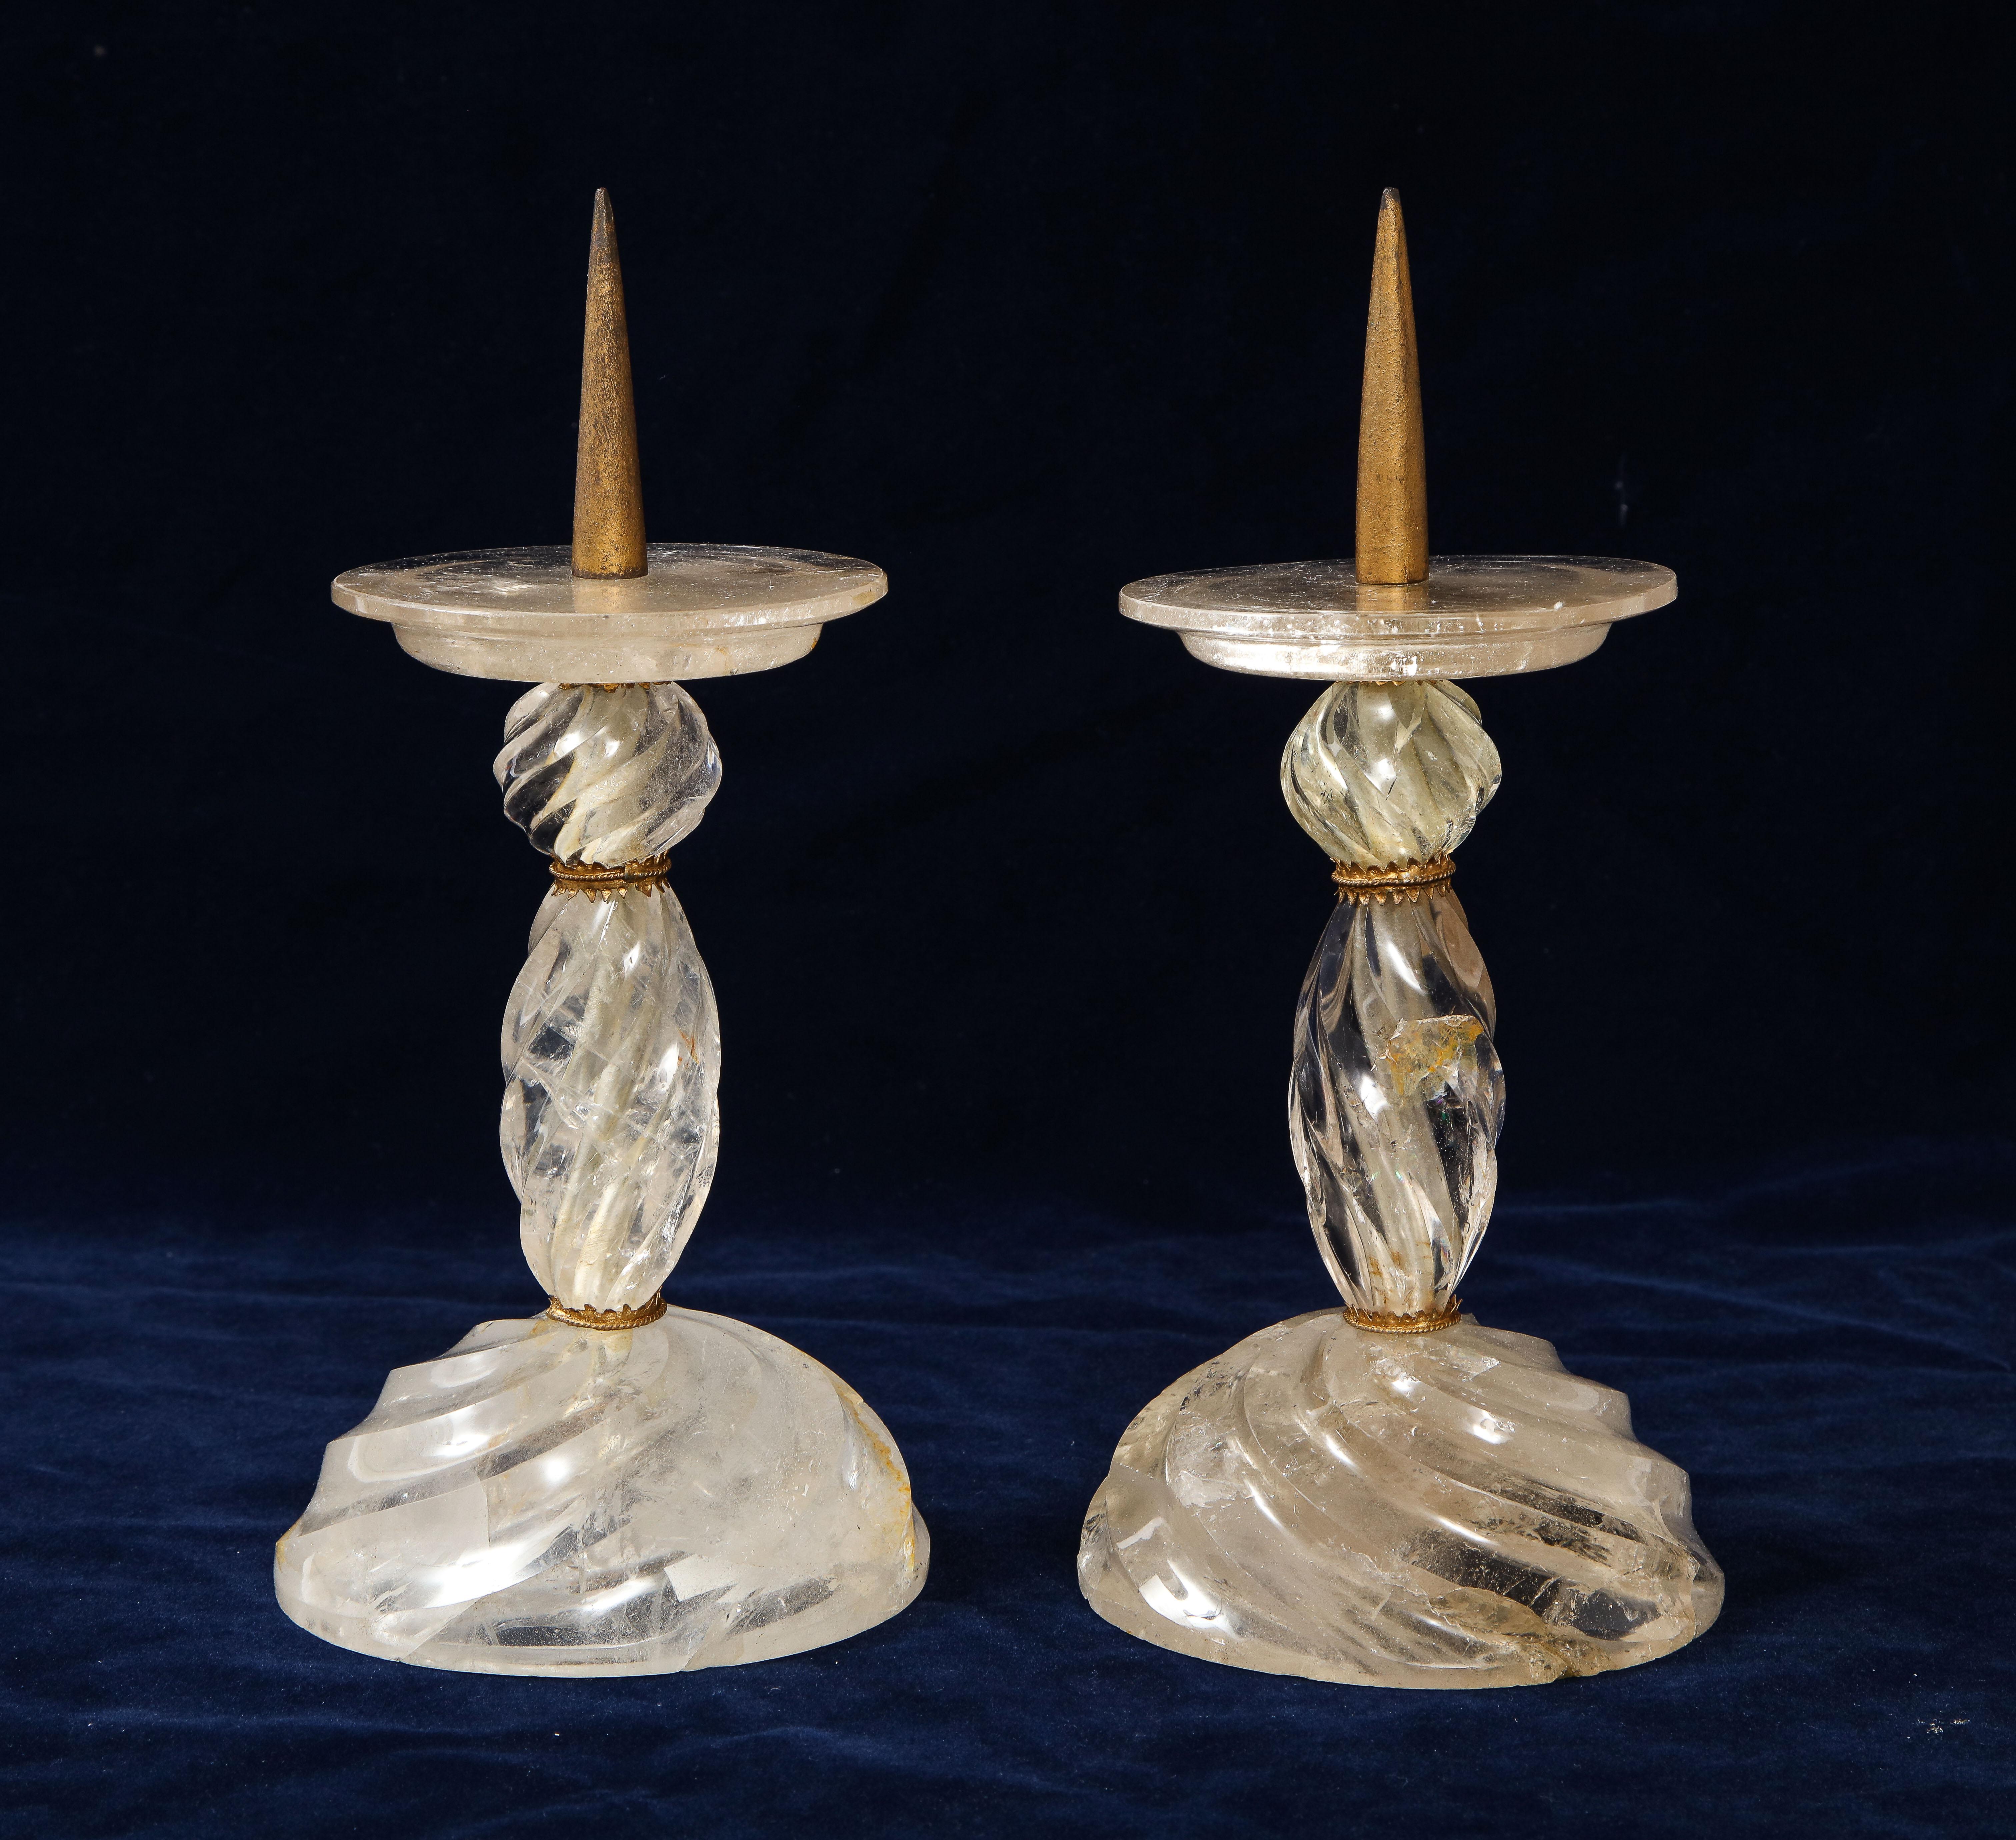 Ein fabelhaftes Paar französischer Kerzenleuchter im Louis XVI-Stil aus Bronze mit handgeschnitztem Bergkristall mit wirbelnden Stacheln, Baguès zugeschrieben. Jeder Kerzenständer ist in außergewöhnlicher Weise von Hand geschnitzt und auf eine